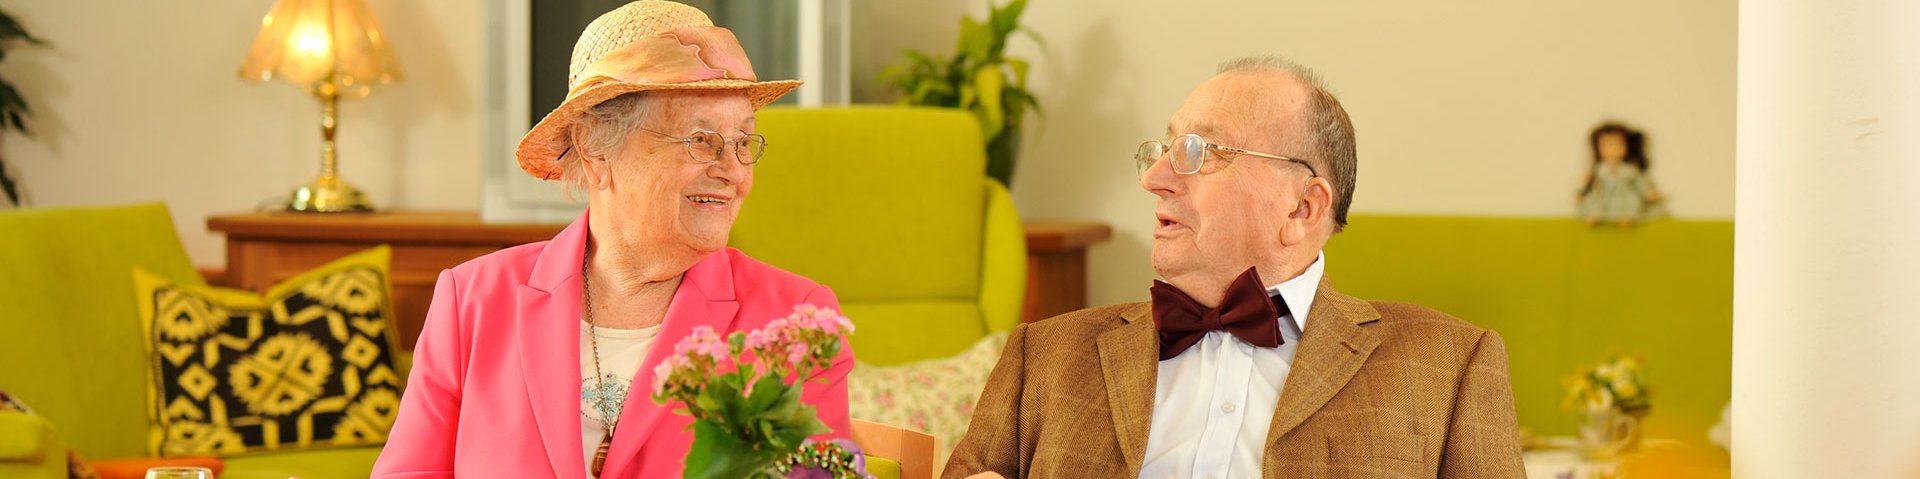 Senioren in festlicher Kleidung am Tisch des betreuten Wohnens in Sonthofen